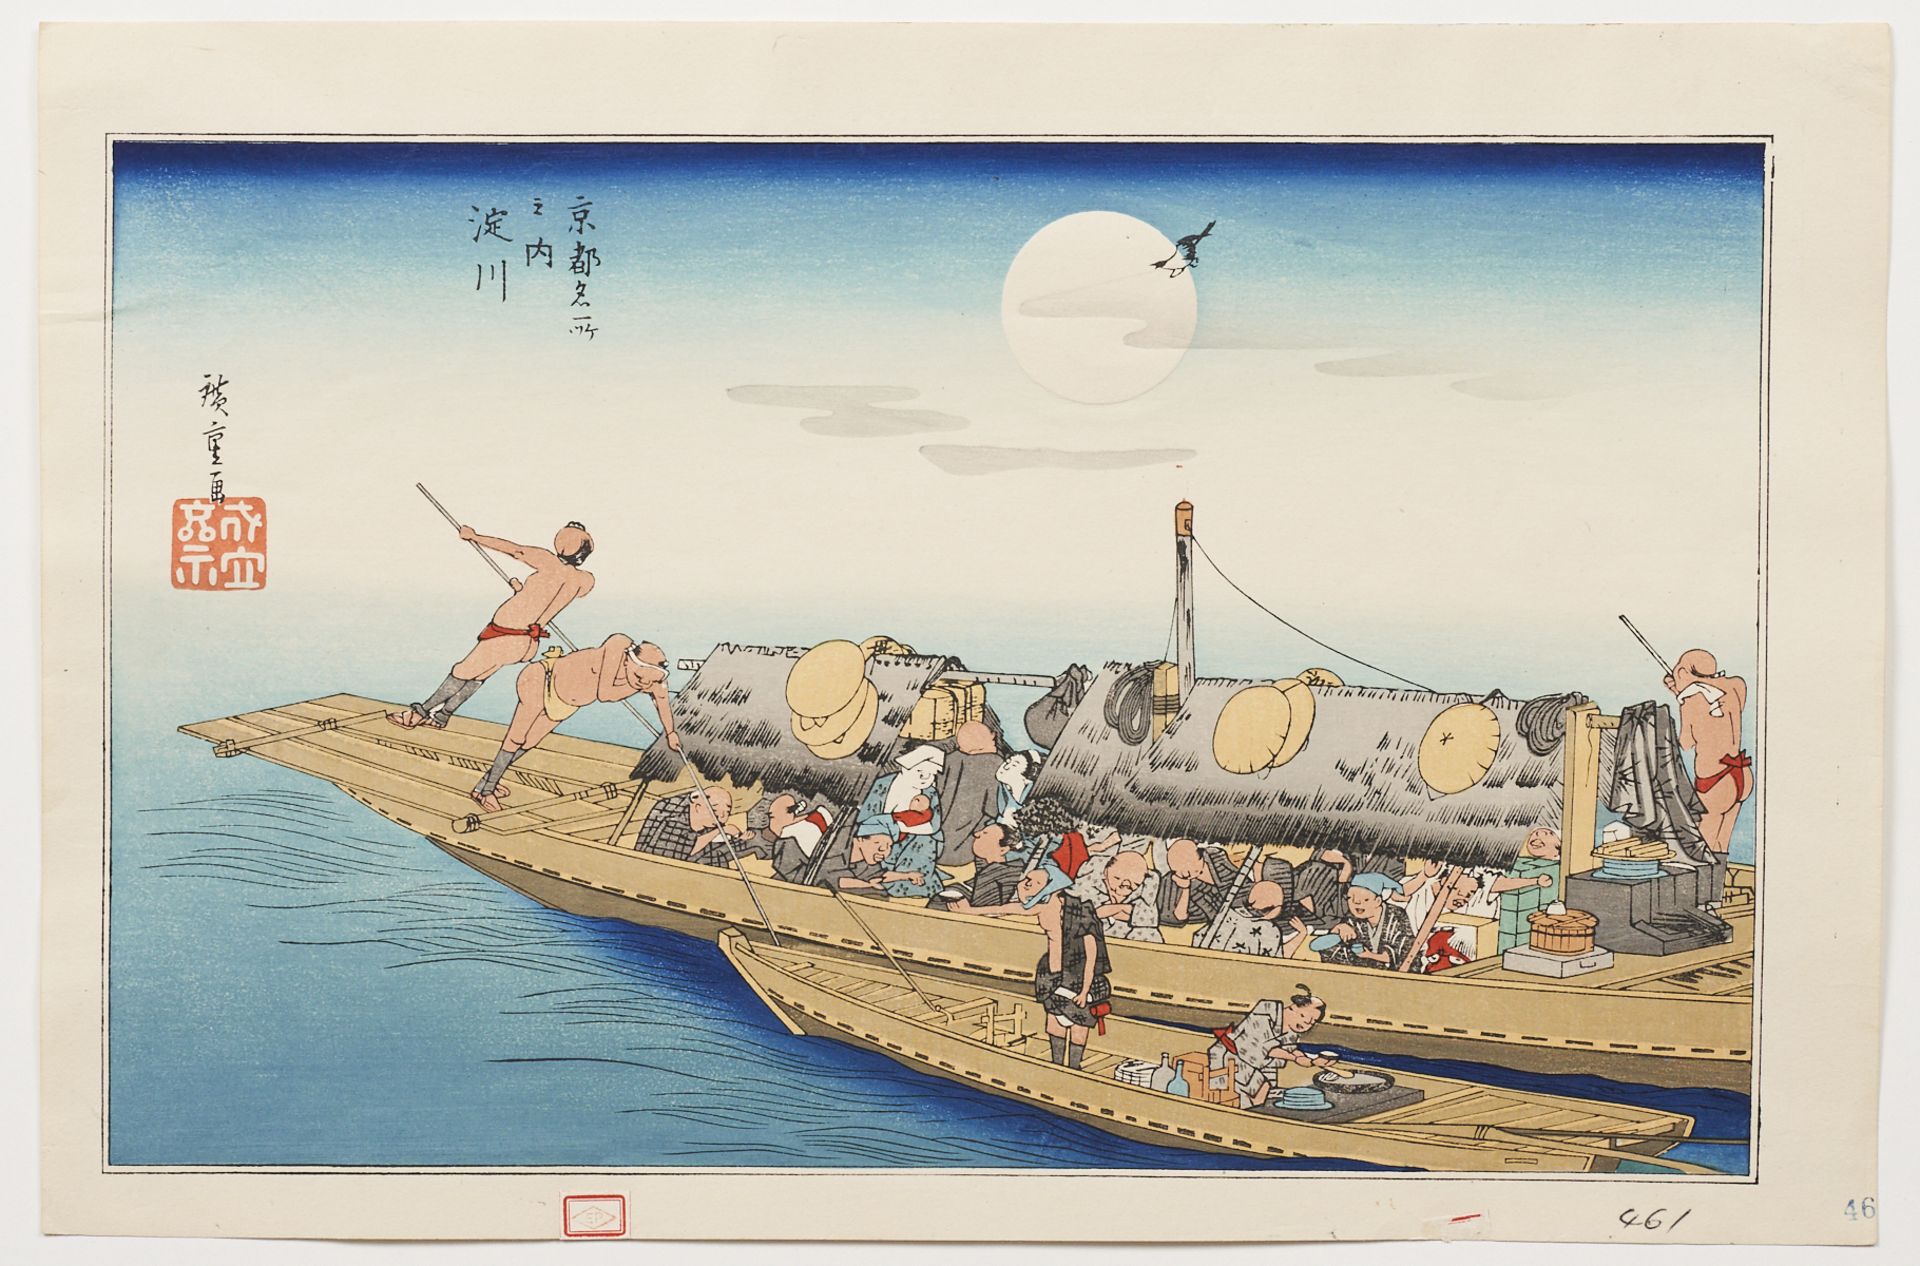 Hiroshige "Yodogawa" Japanese Woodblock Print